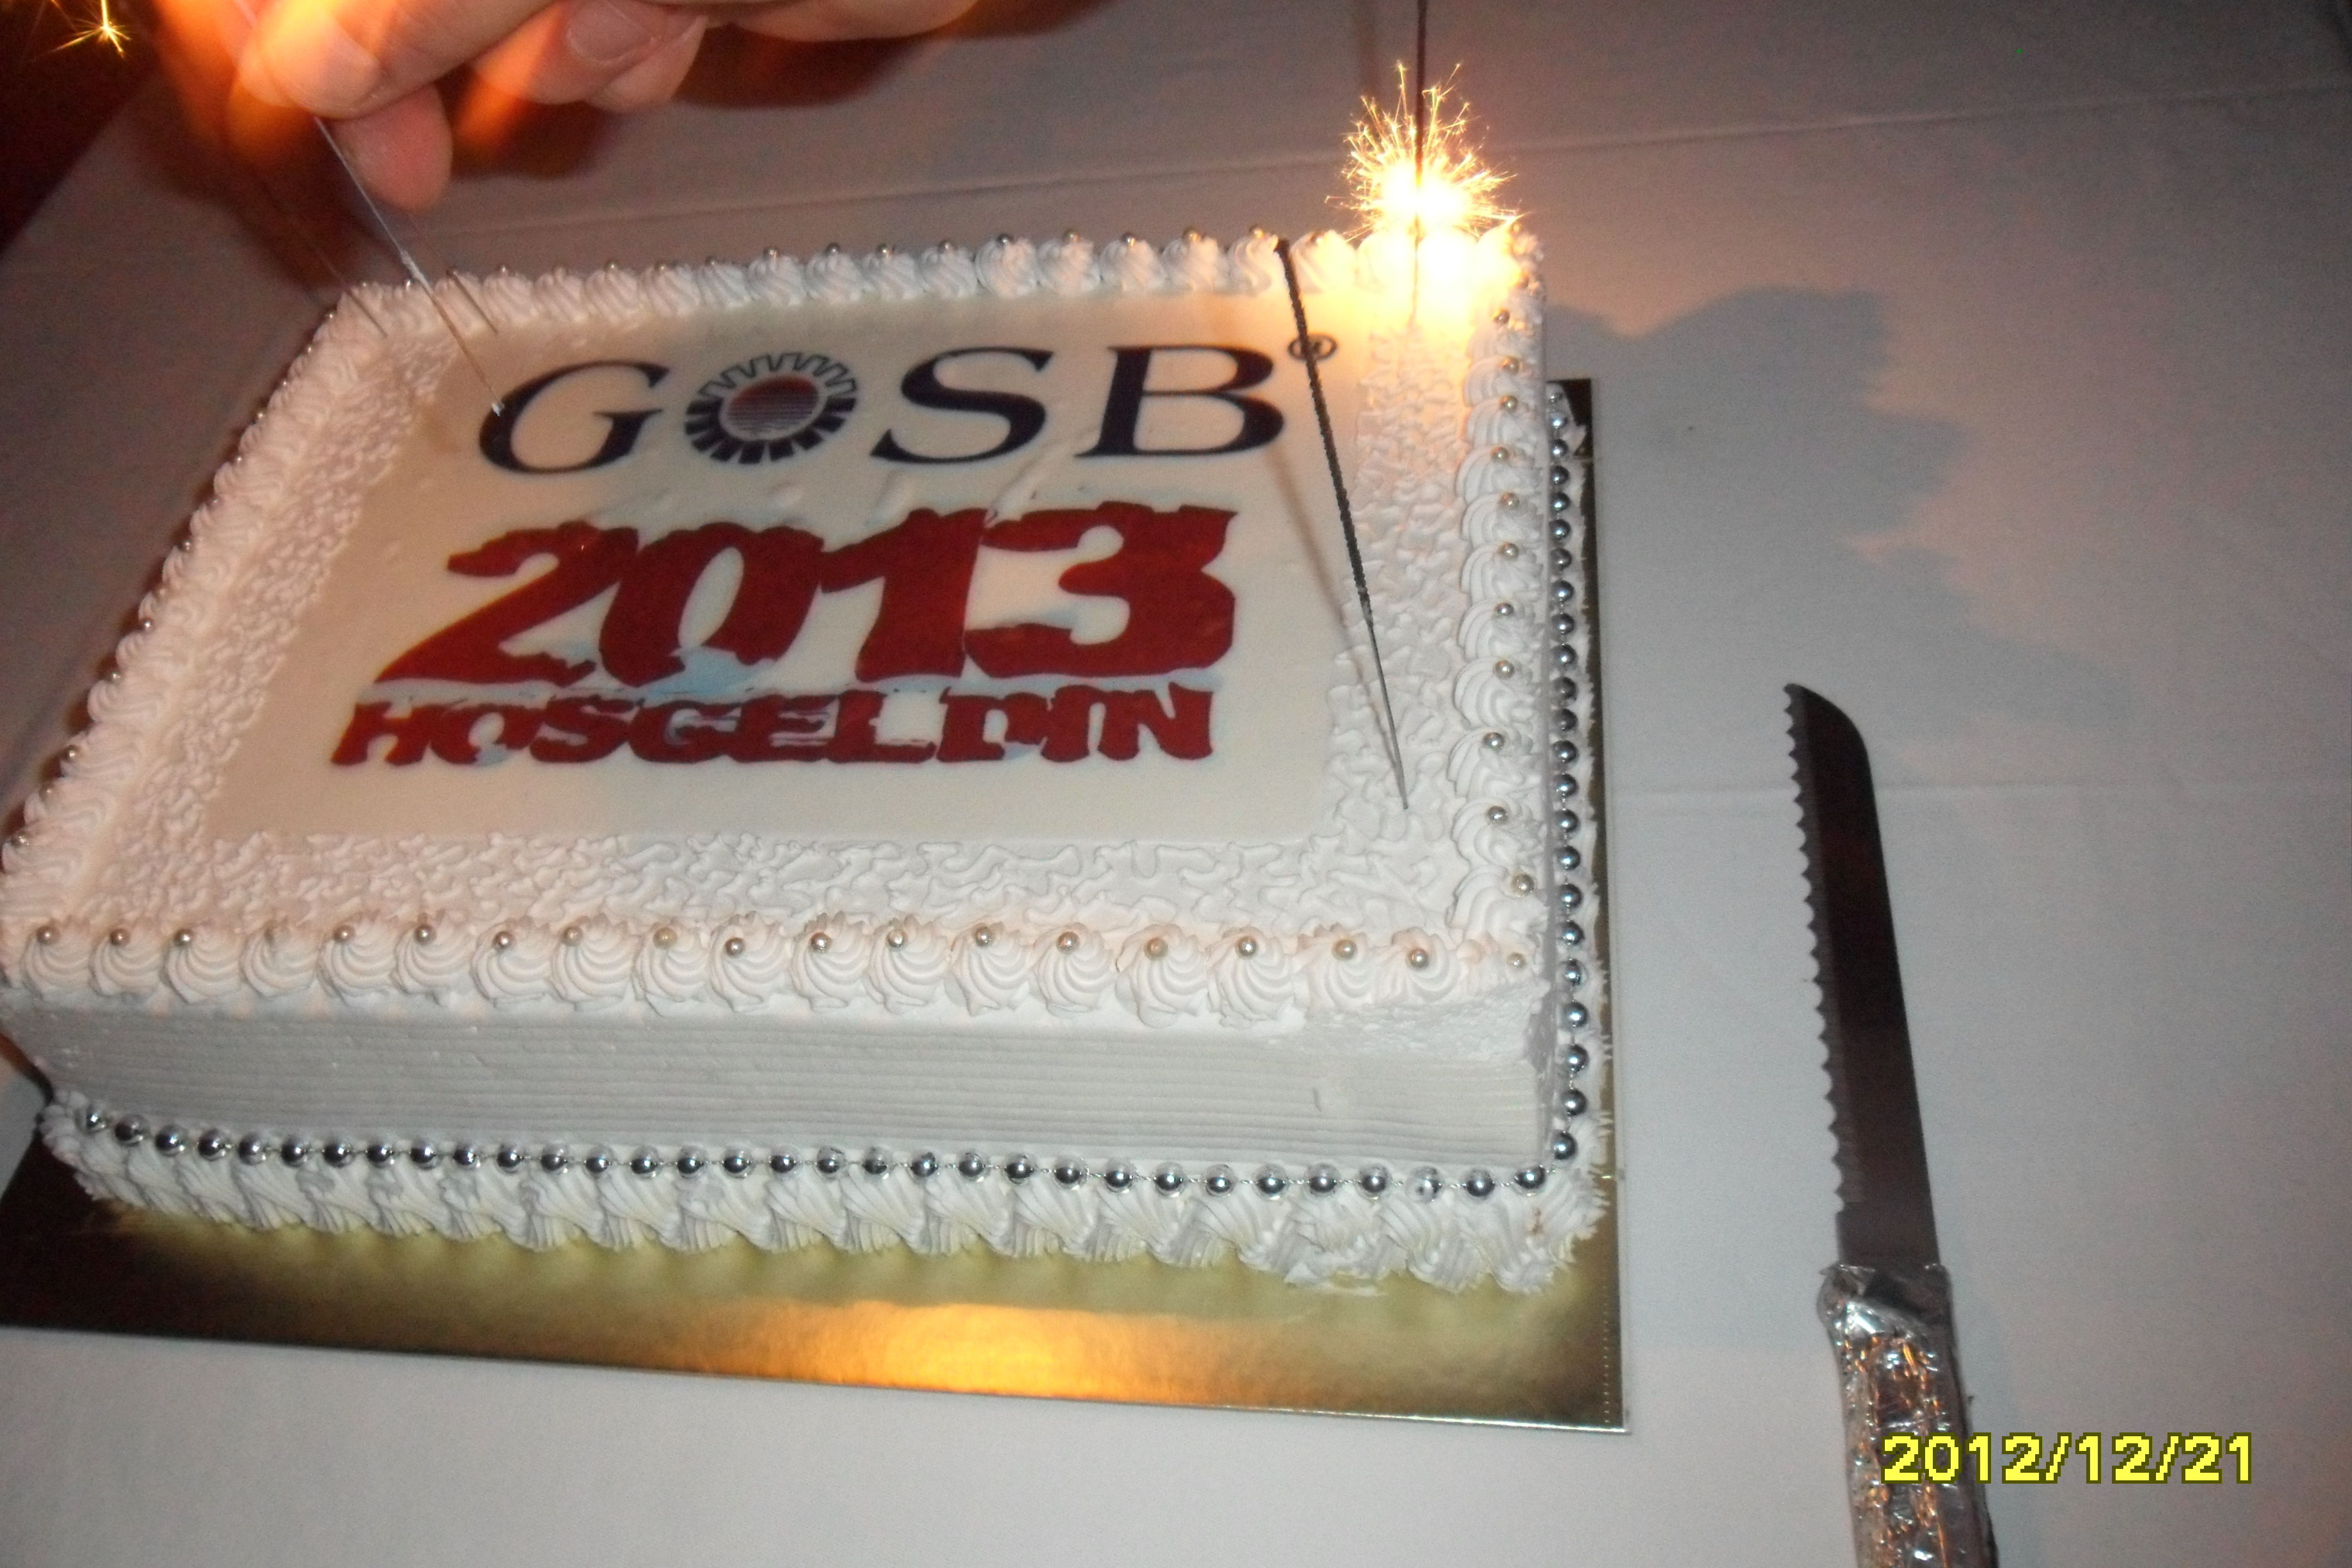 2013 GOSB yılbaşı kutlaması